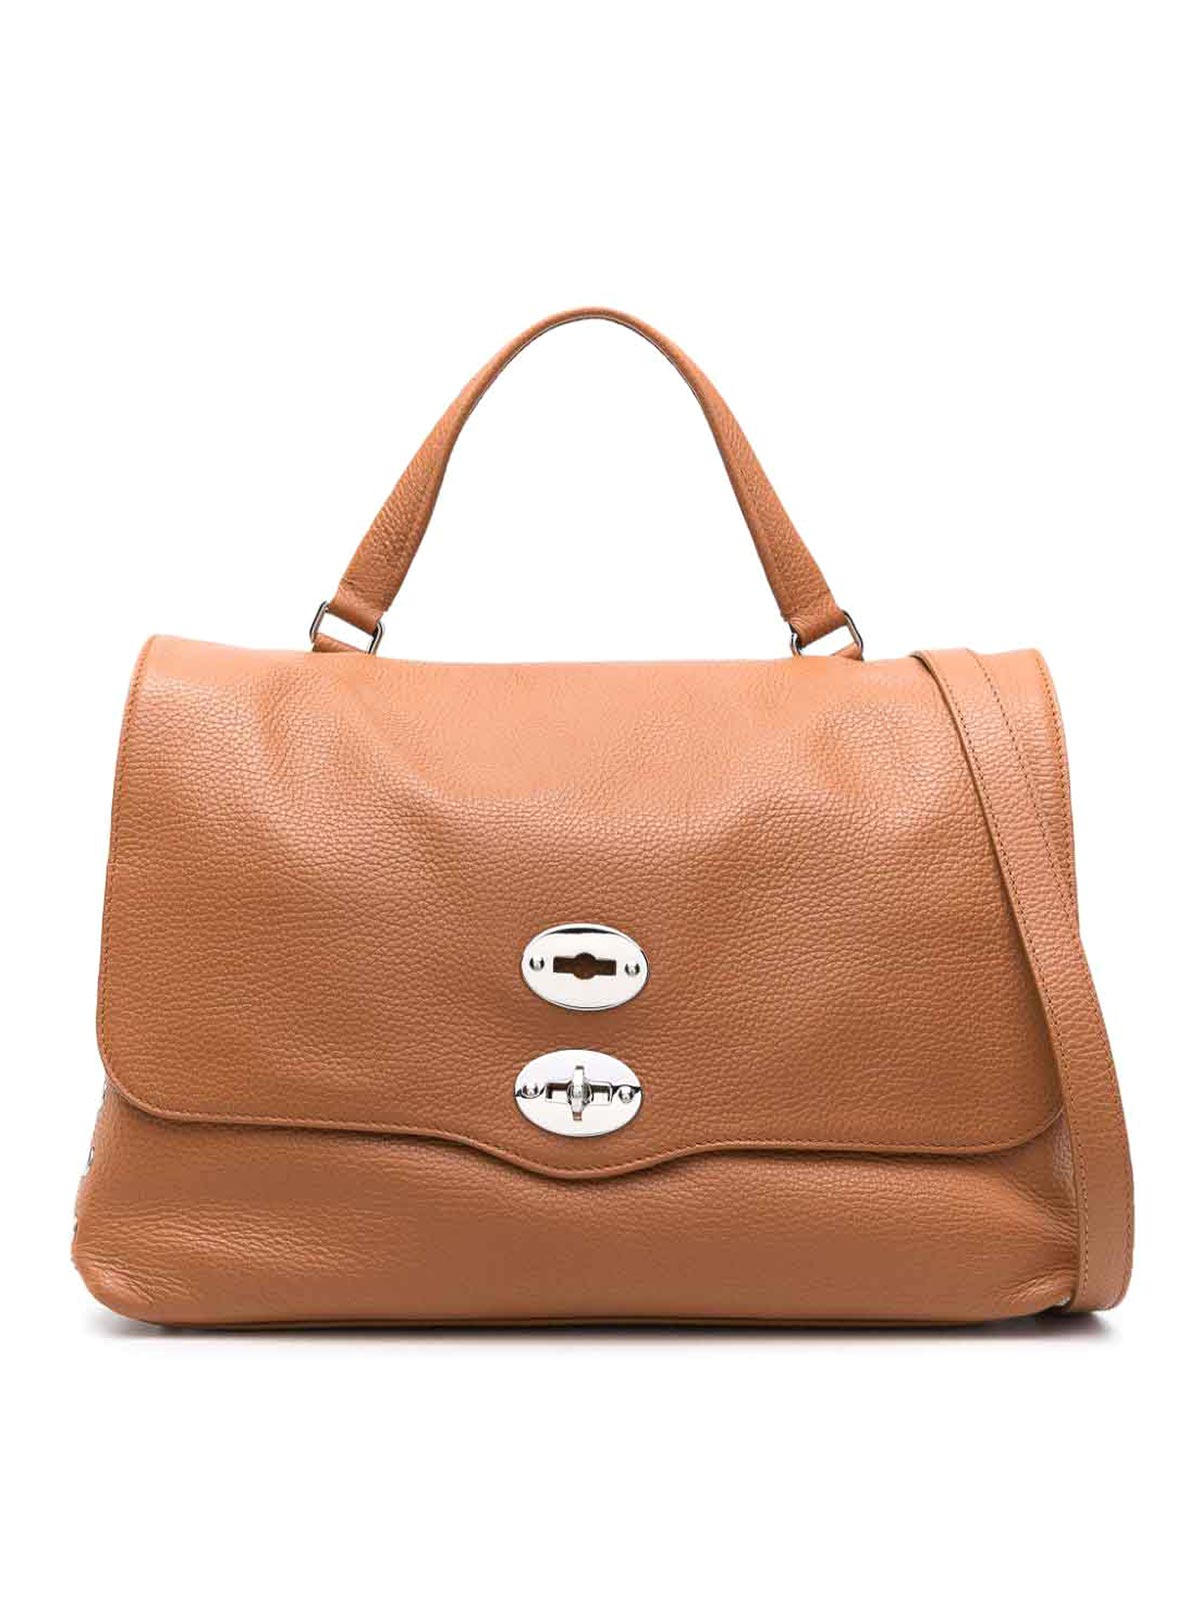 Zanellato Postina M Daily Leather Handbag In Marrón